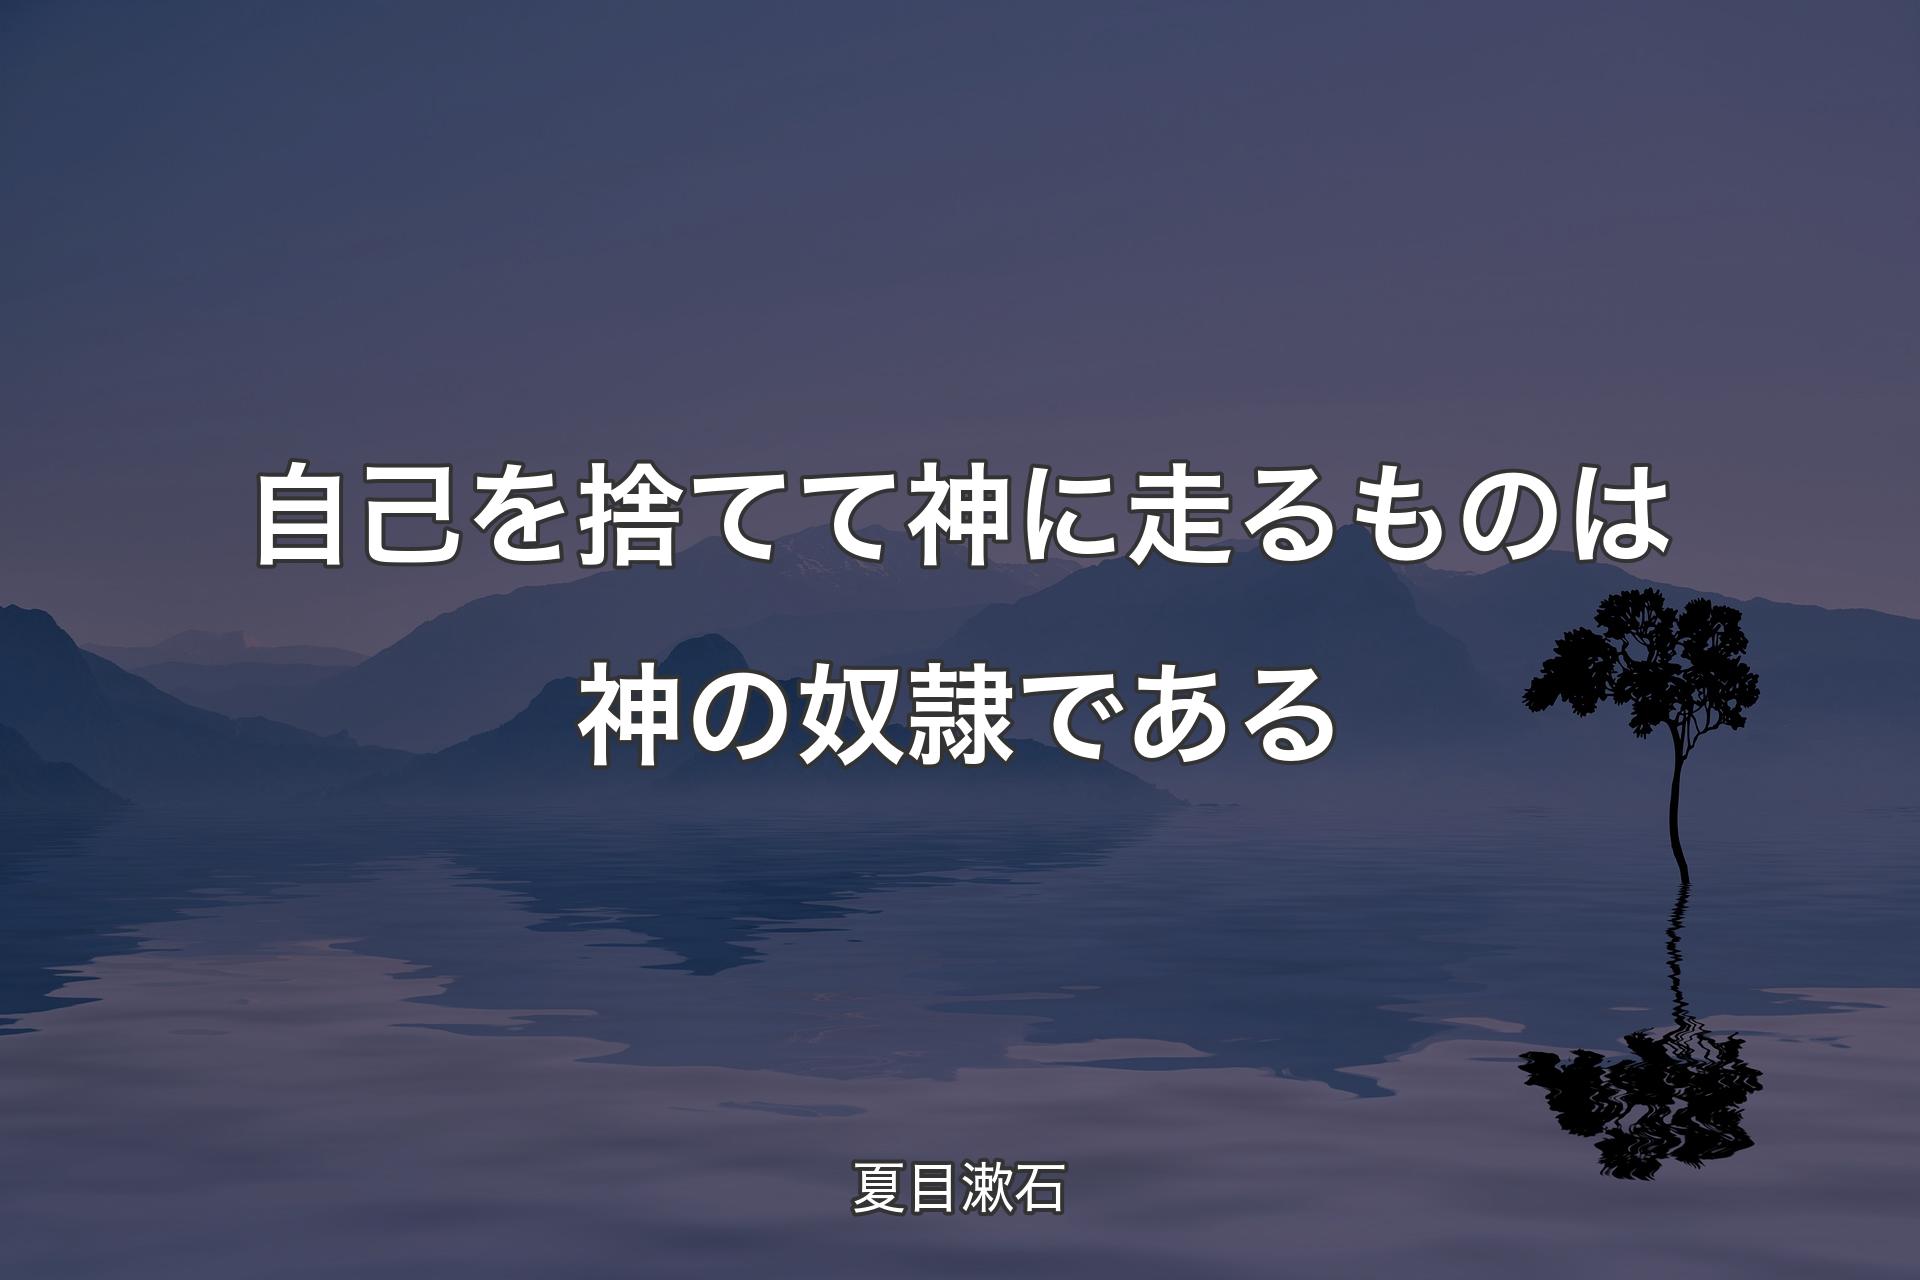 【背景4】自己を捨てて神に走るものは神の奴隷である - 夏目漱石